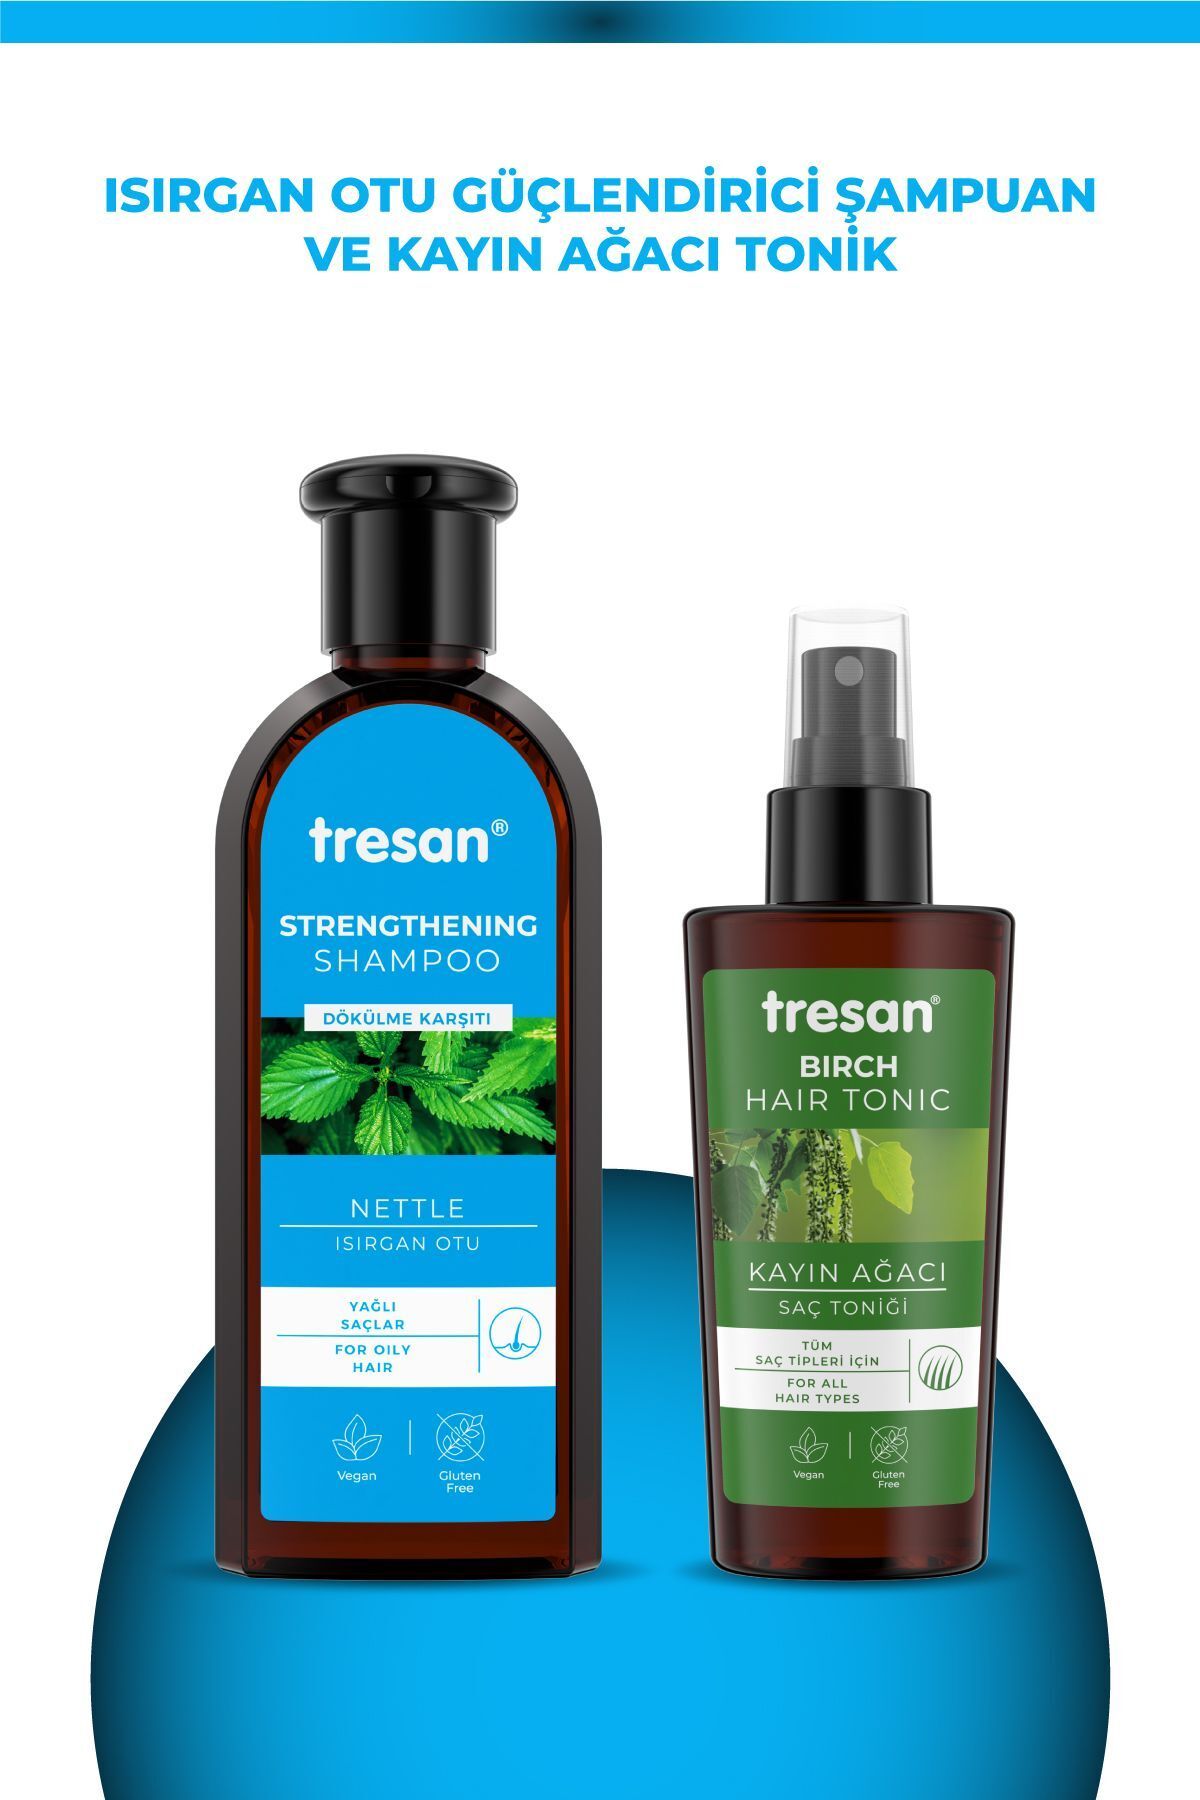 Tresan Dökülme Karşıtı Isırgan Otu Güçlendirici Bakım Şampuanı 300 ml Yağlı Saçlar Için Tresan K.ağa